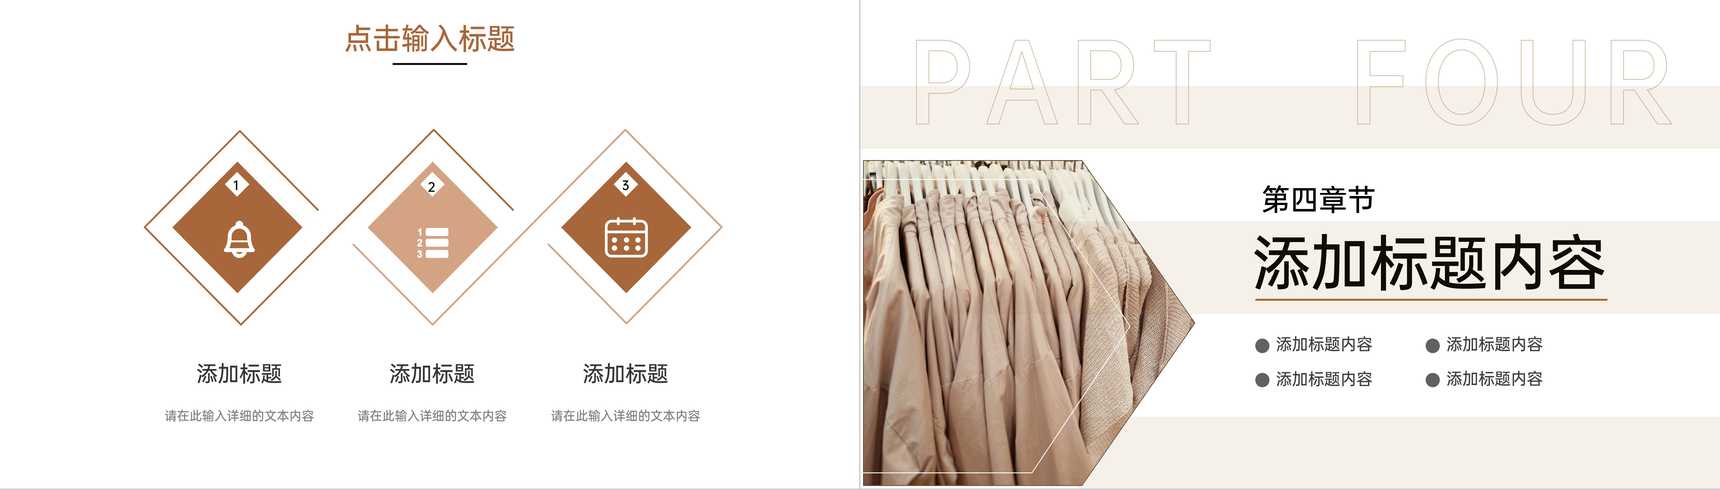 棕色商务风服装招商加盟品牌项目合作方案PPT模板-8